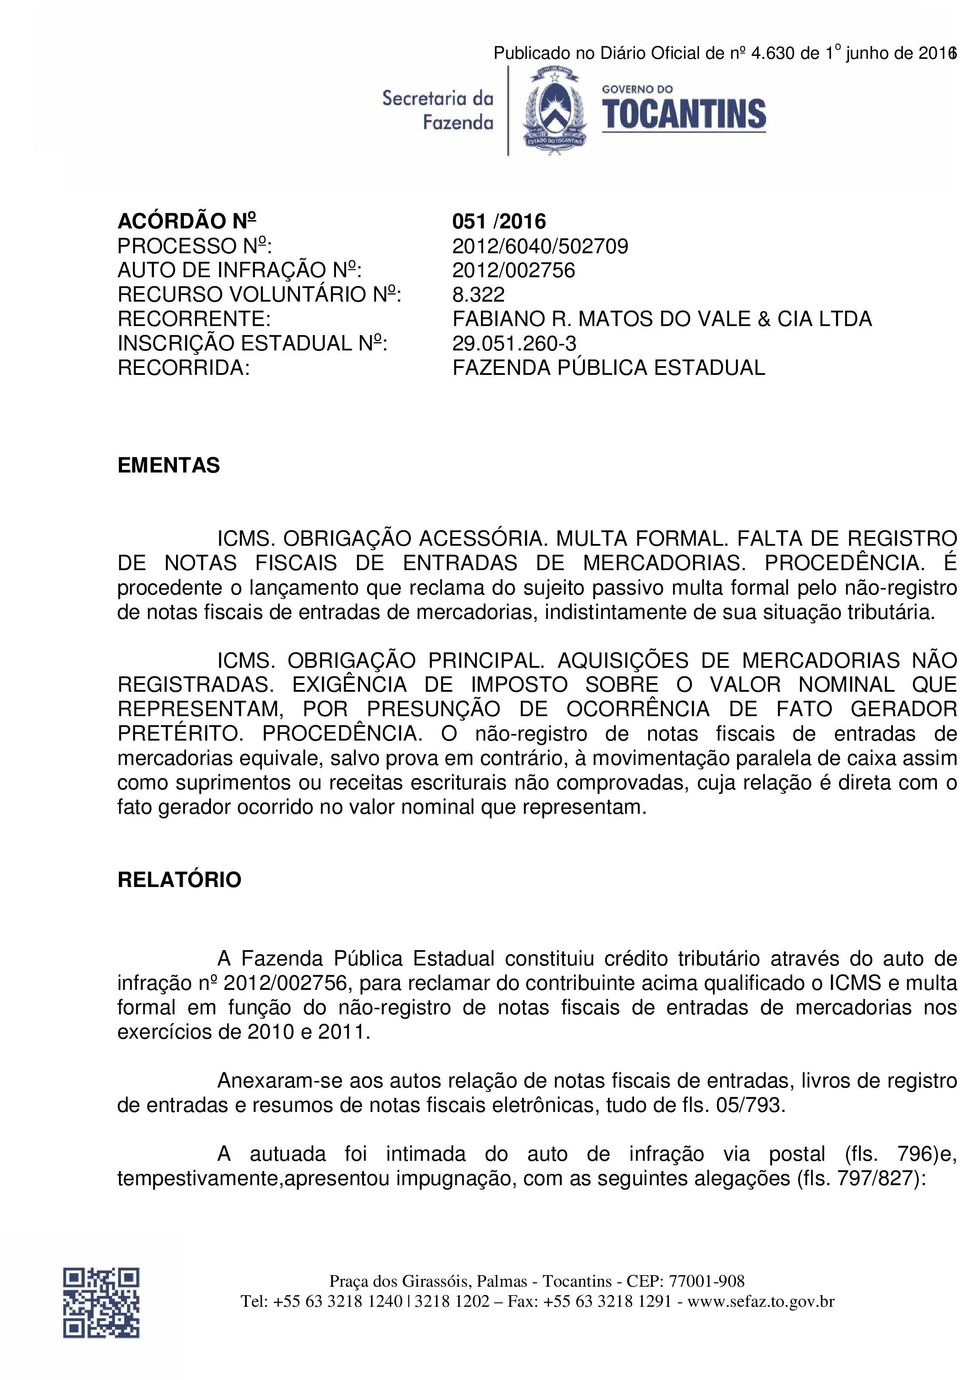 FALTA DE REGISTRO DE NOTAS FISCAIS DE ENTRADAS DE MERCADORIAS. PROCEDÊNCIA.